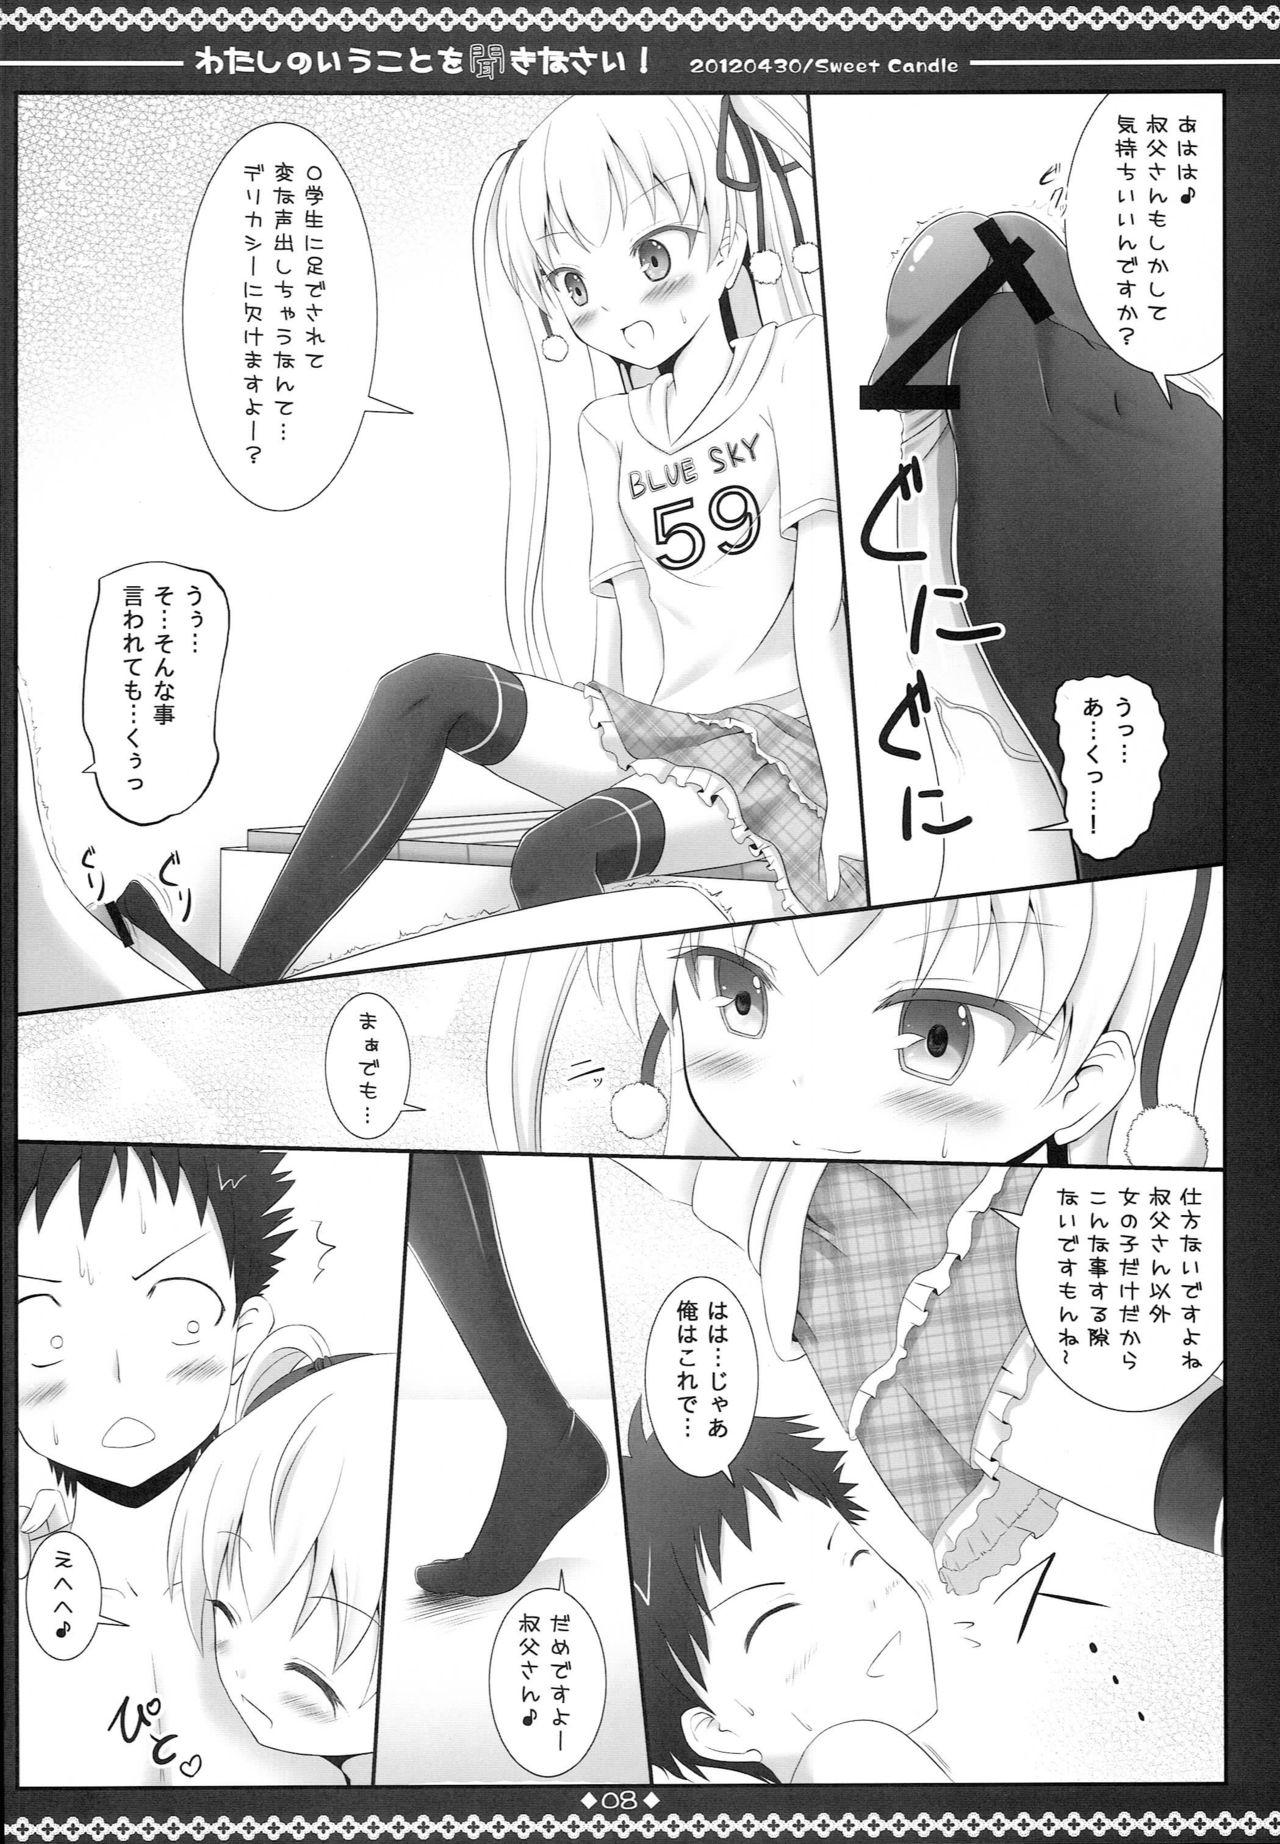 Transsexual Watashi no Iu Koto o Kikinasai! - Papa no iu koto wo kikinasai Sucking Dicks - Page 7